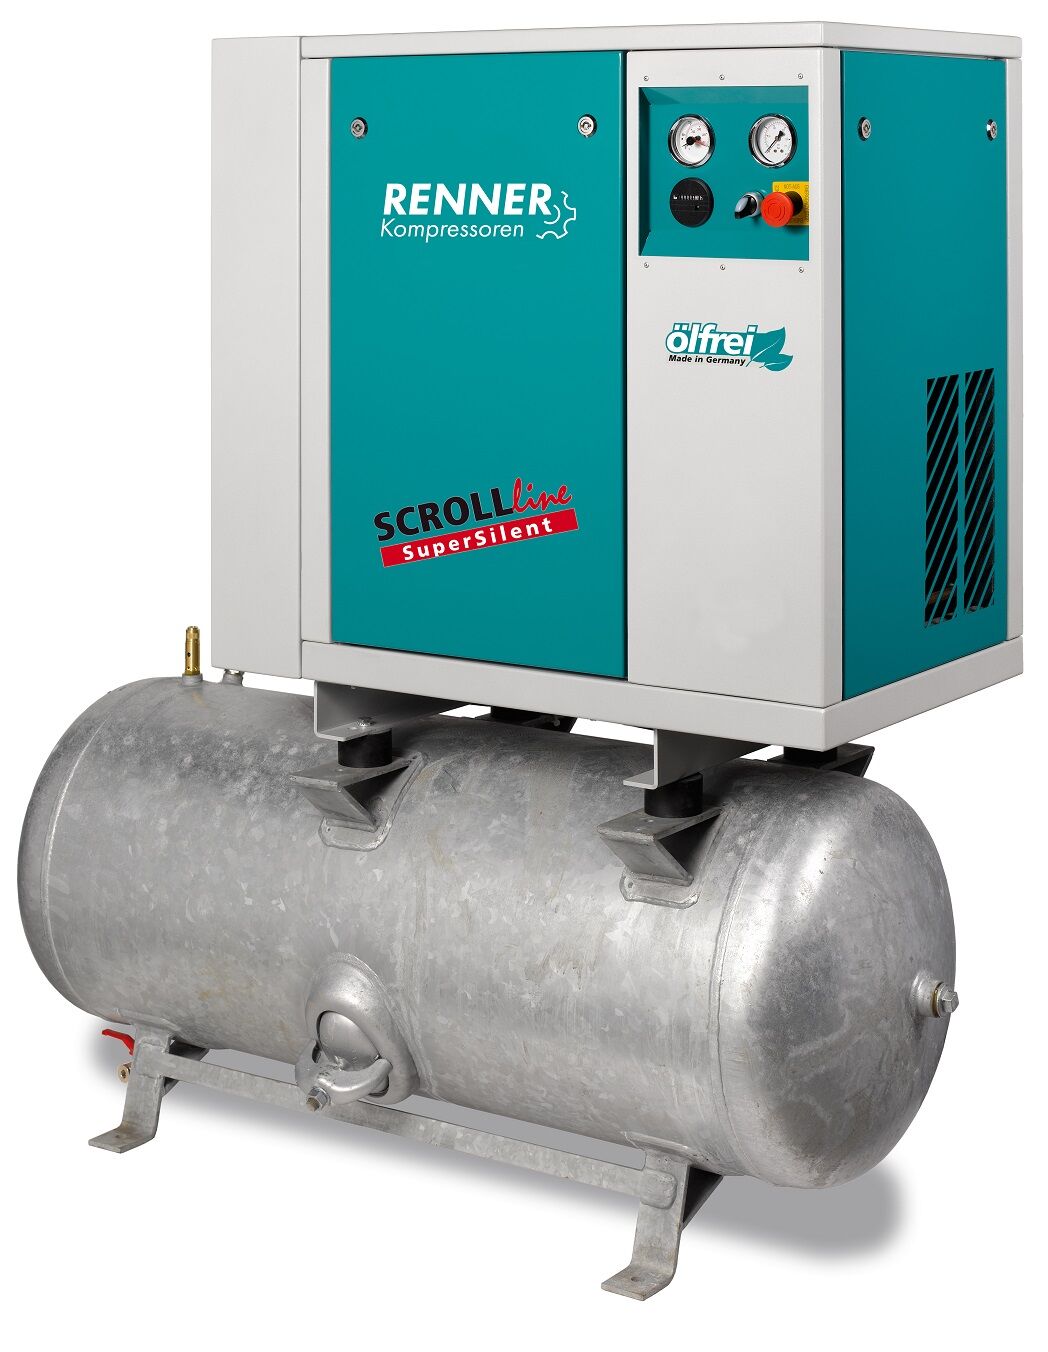 RENNER-Kompressor SLD-S 2,2 auf 90 Liter Druckbehälter - SuperSilent ölfreier Scrollkompressor